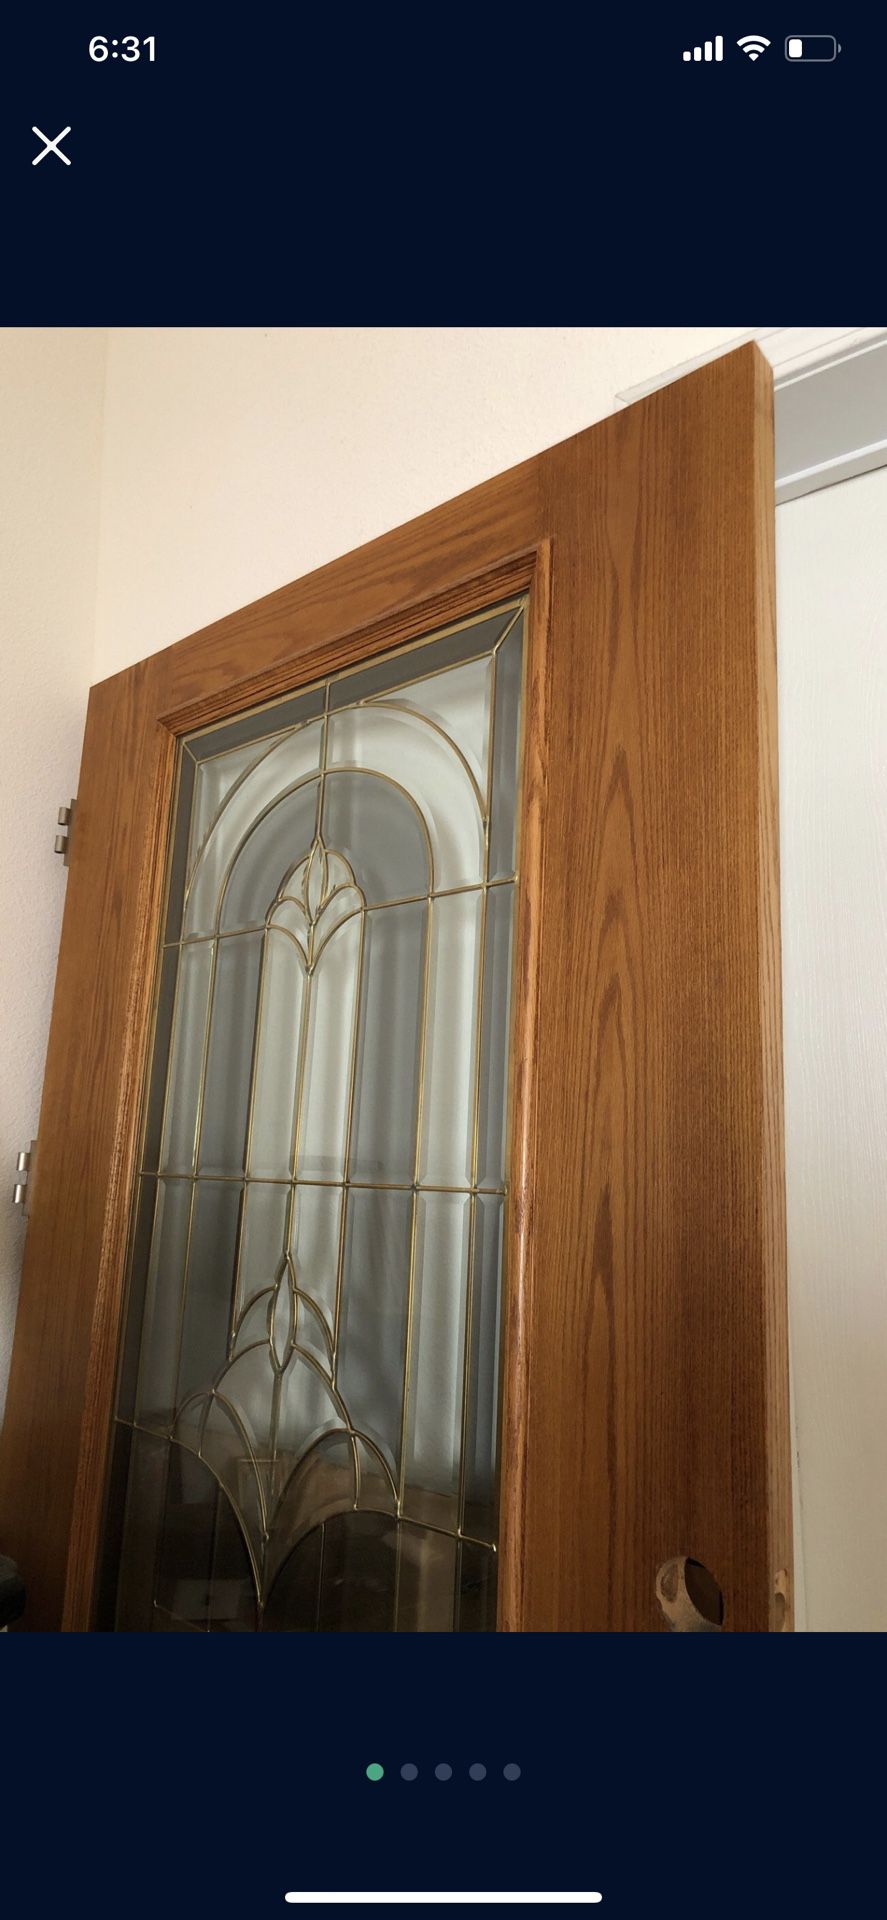 Wooden Door 